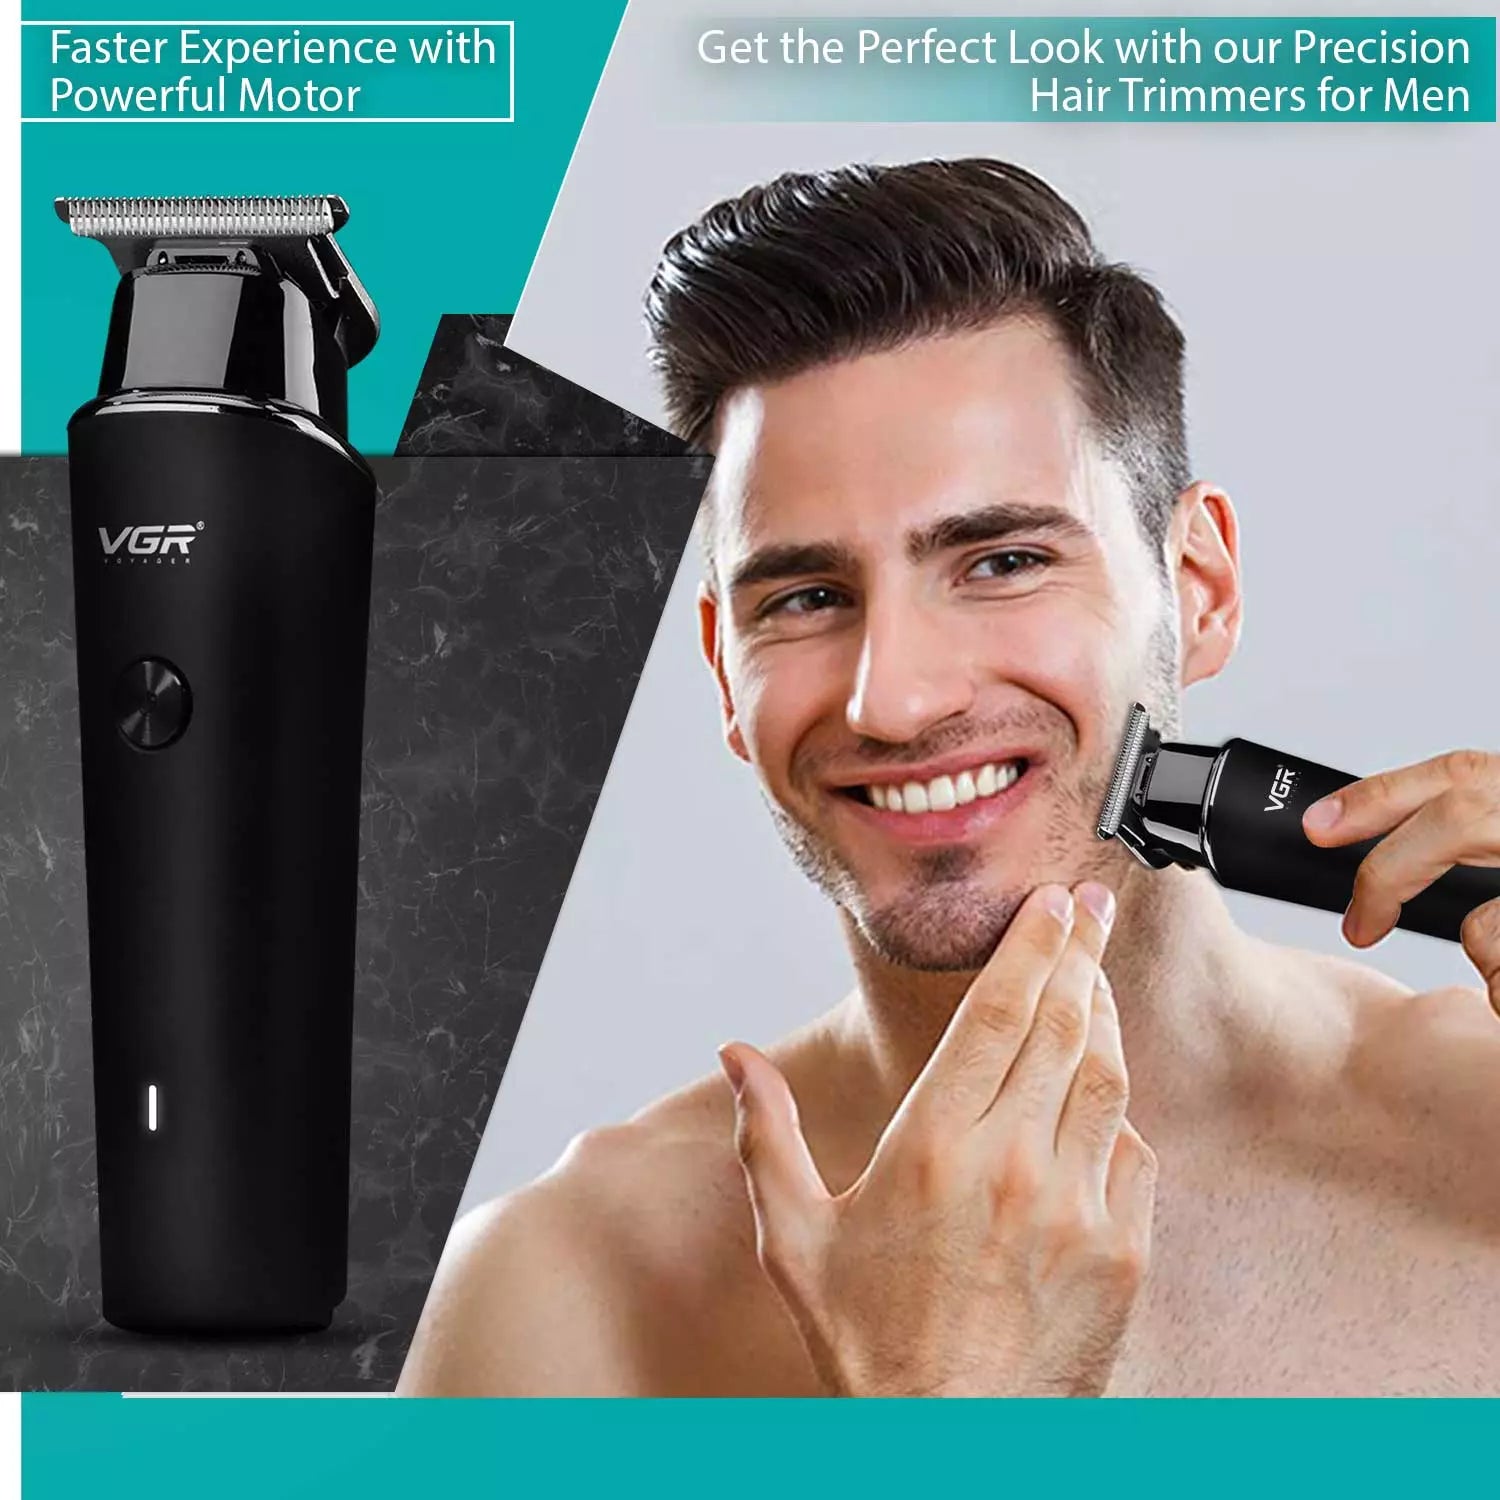 VGR V-933 Hair Trimmer For Men, Black